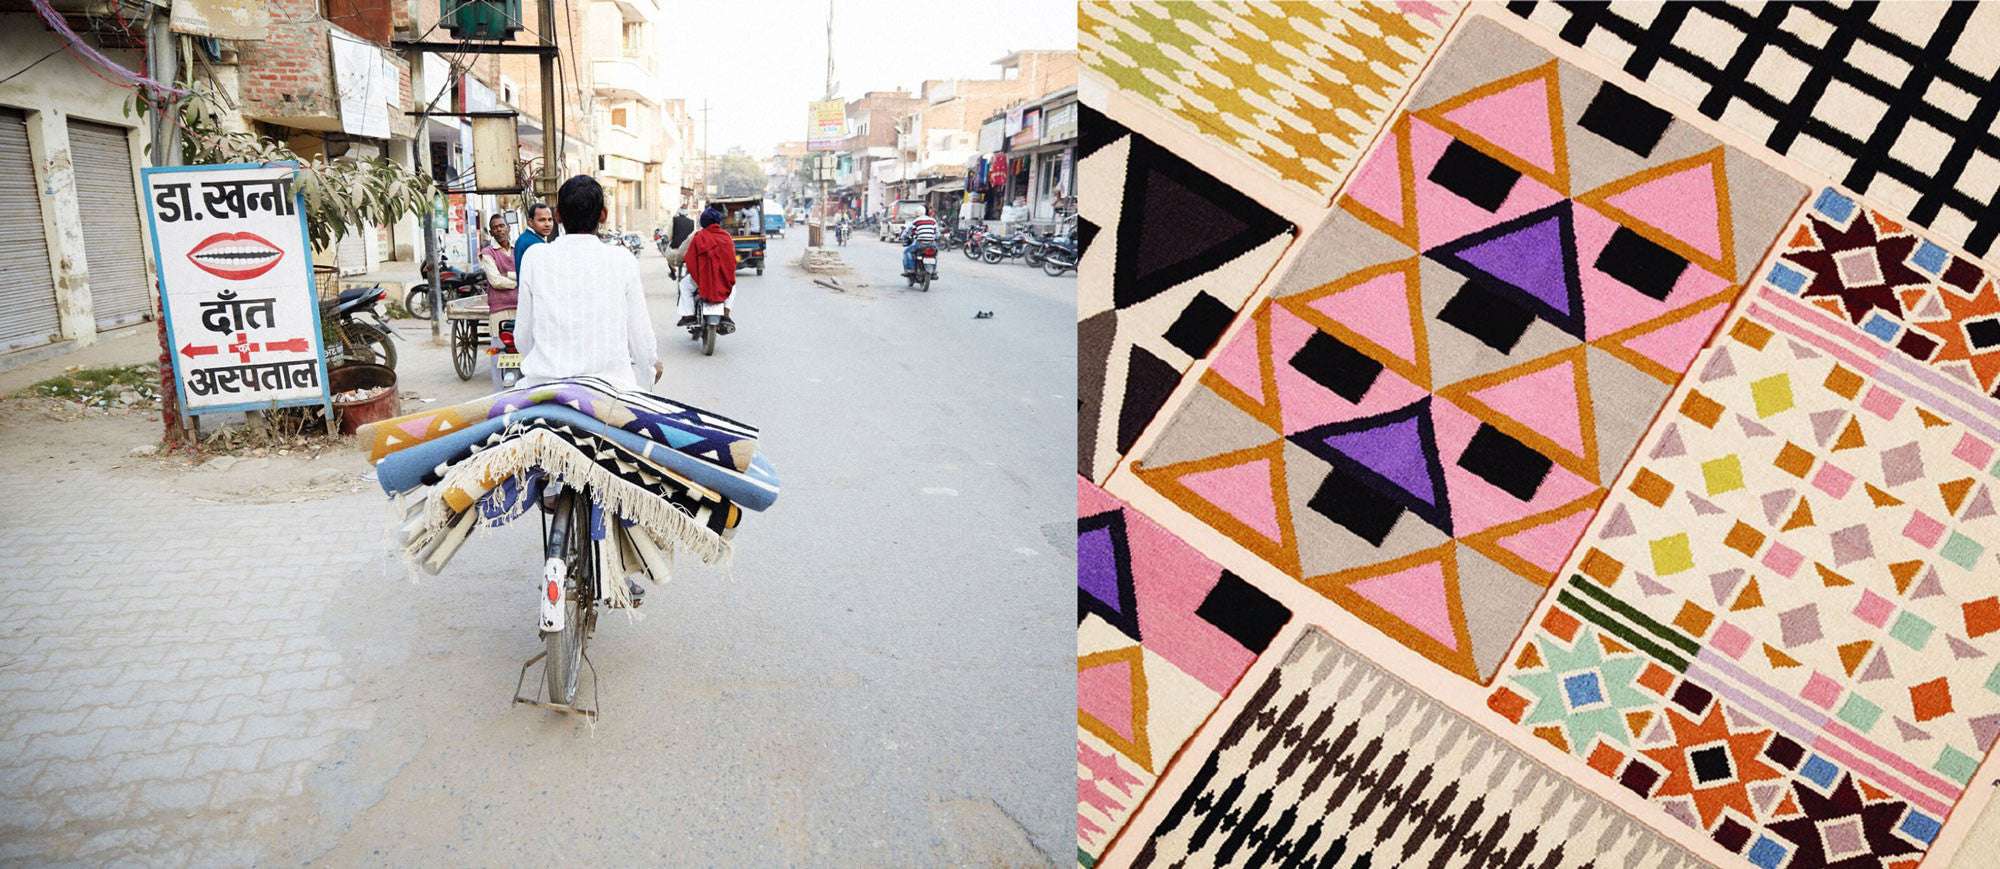 Aelfie handmade rugs in India